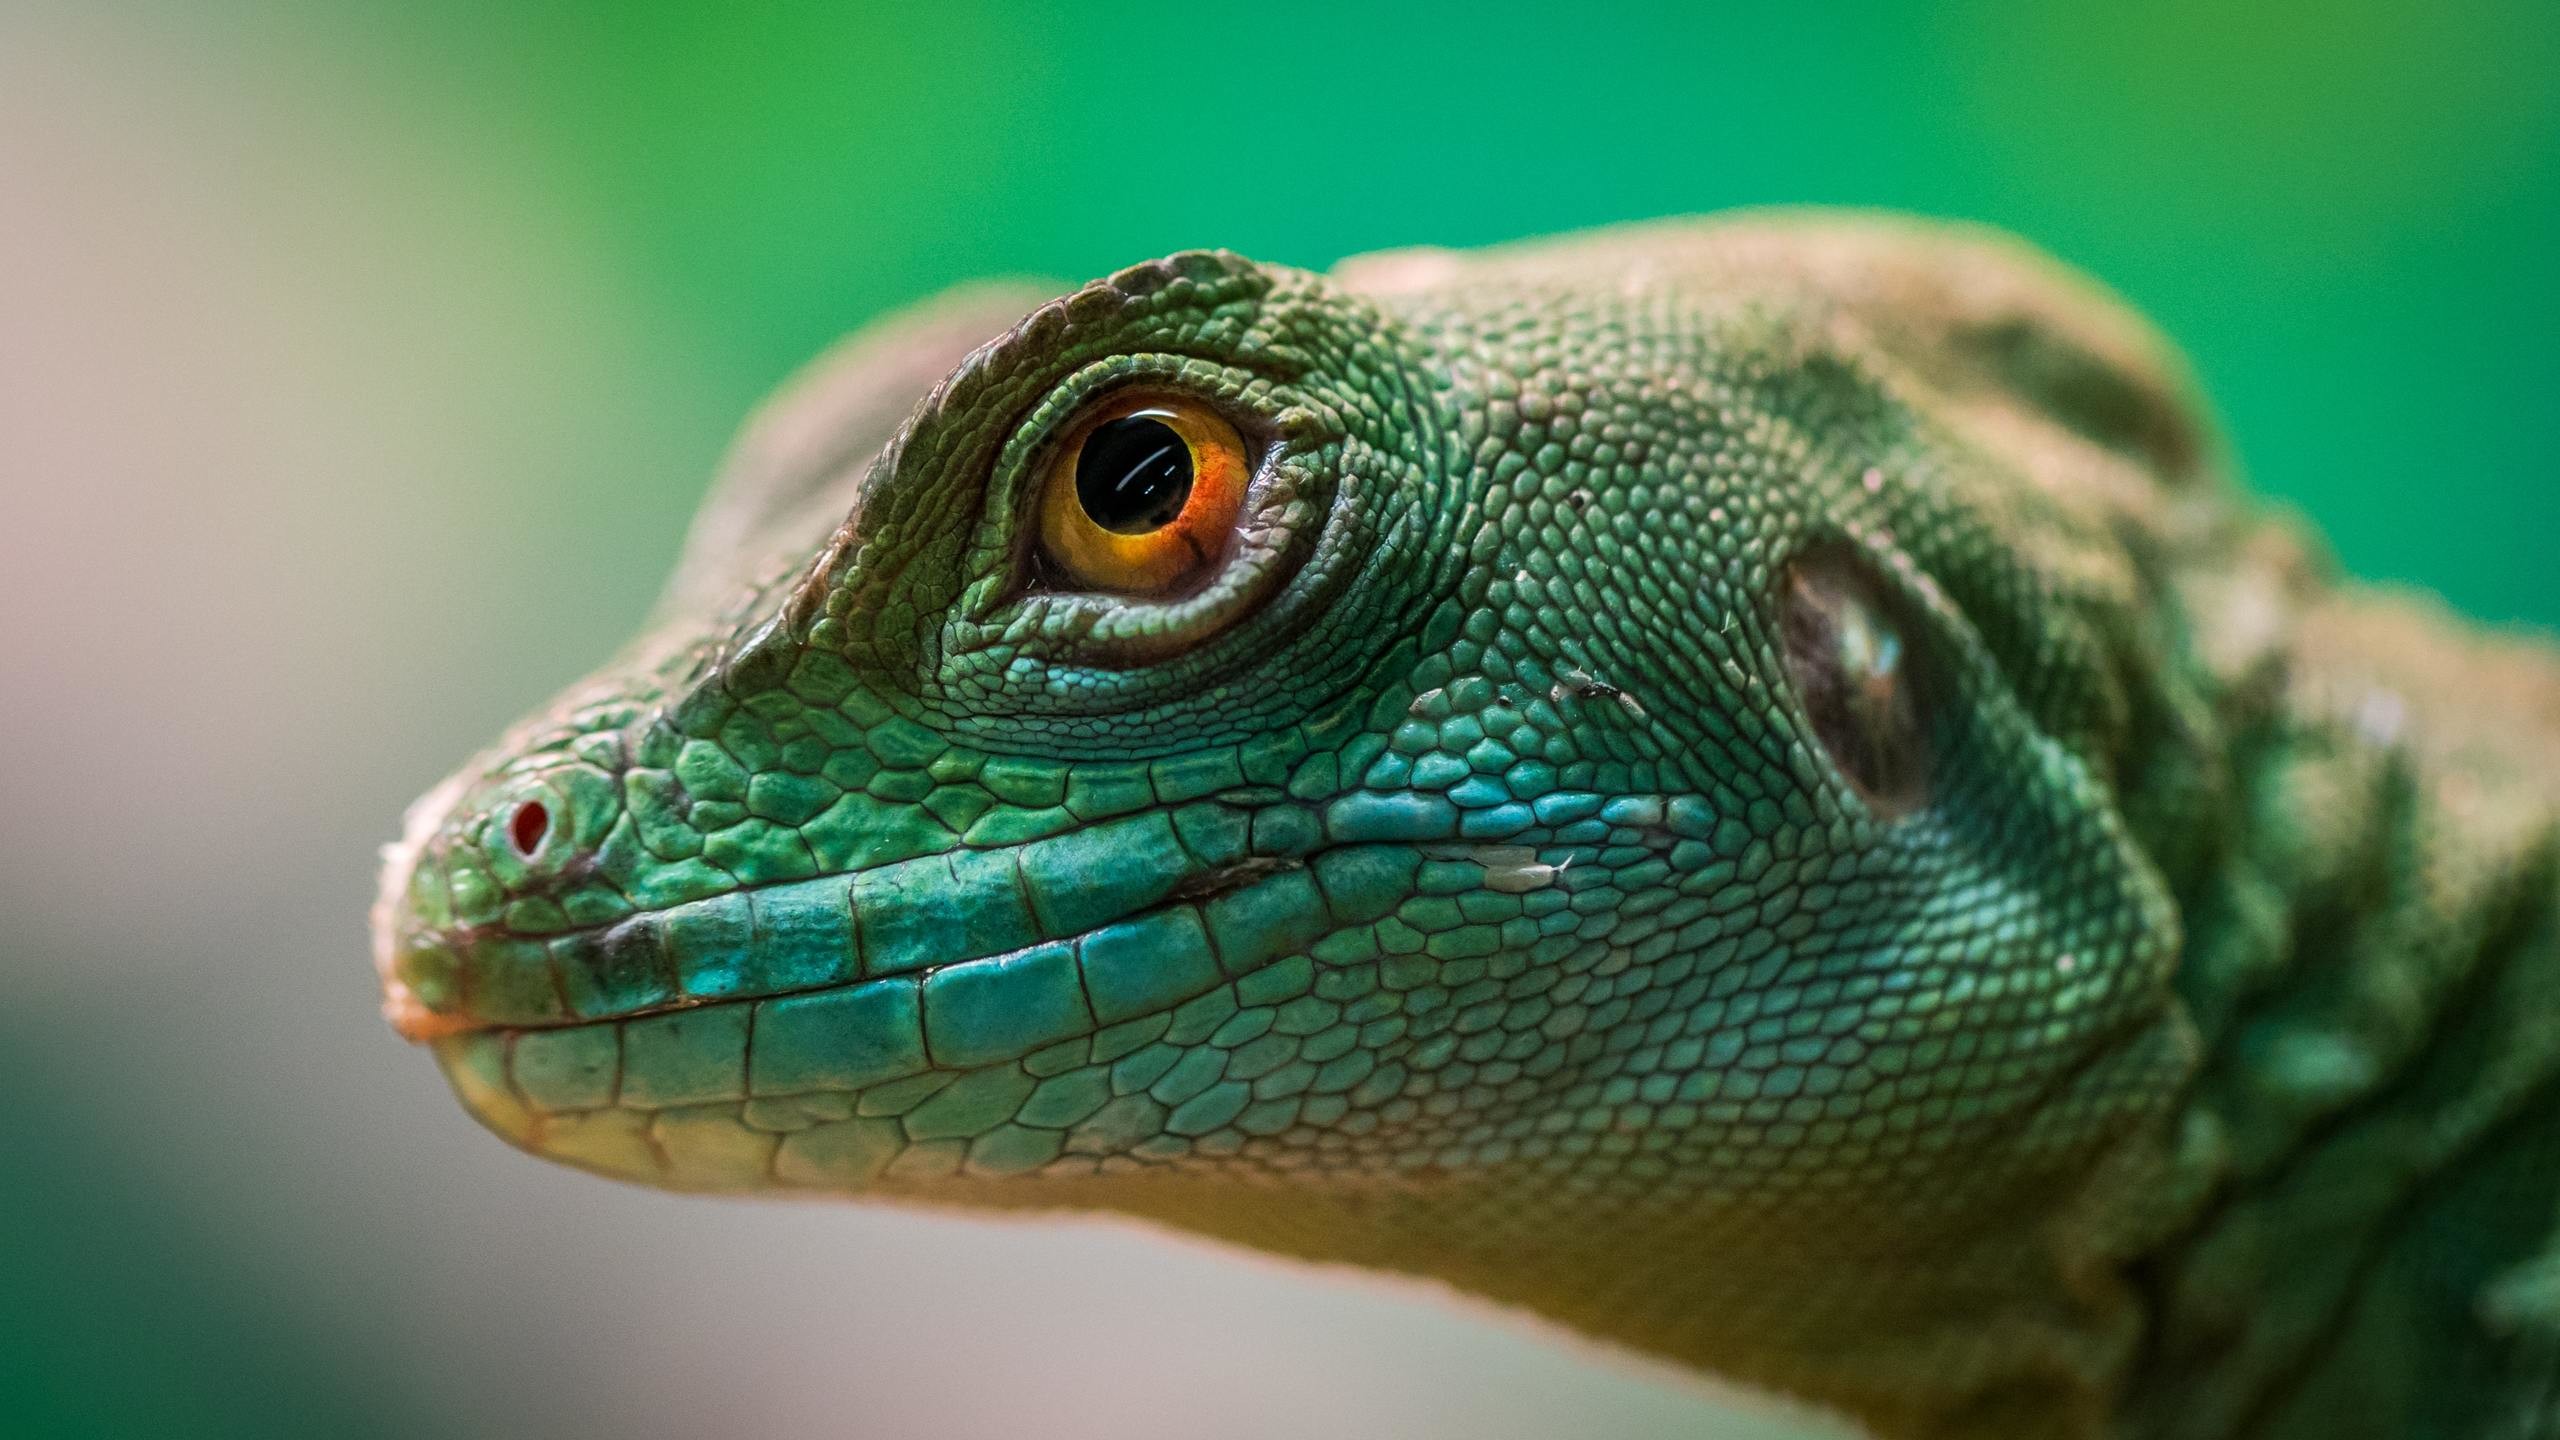 2560x1440 green-lizard-reptile-macro-4k-jv.jpg